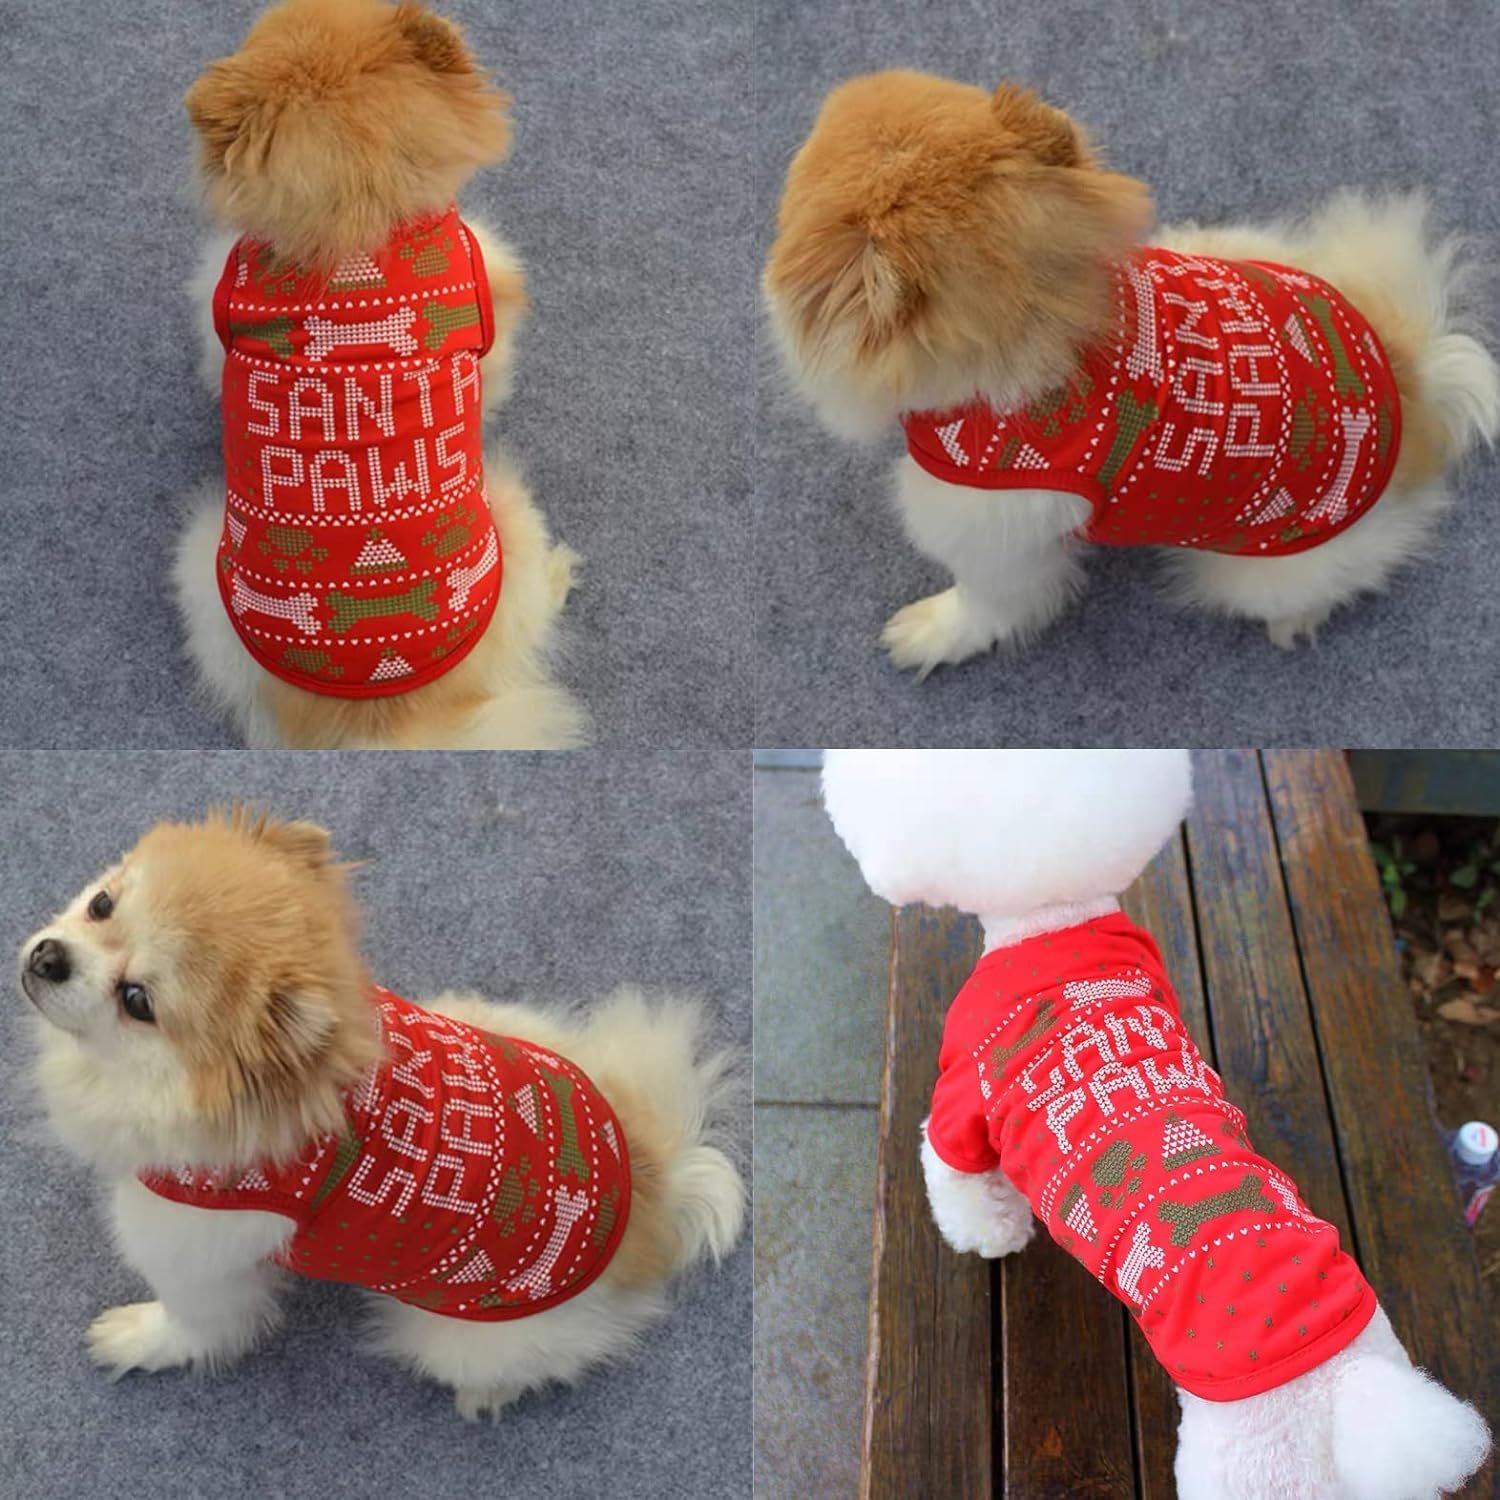 afocuz dog shirt christmas clothes review